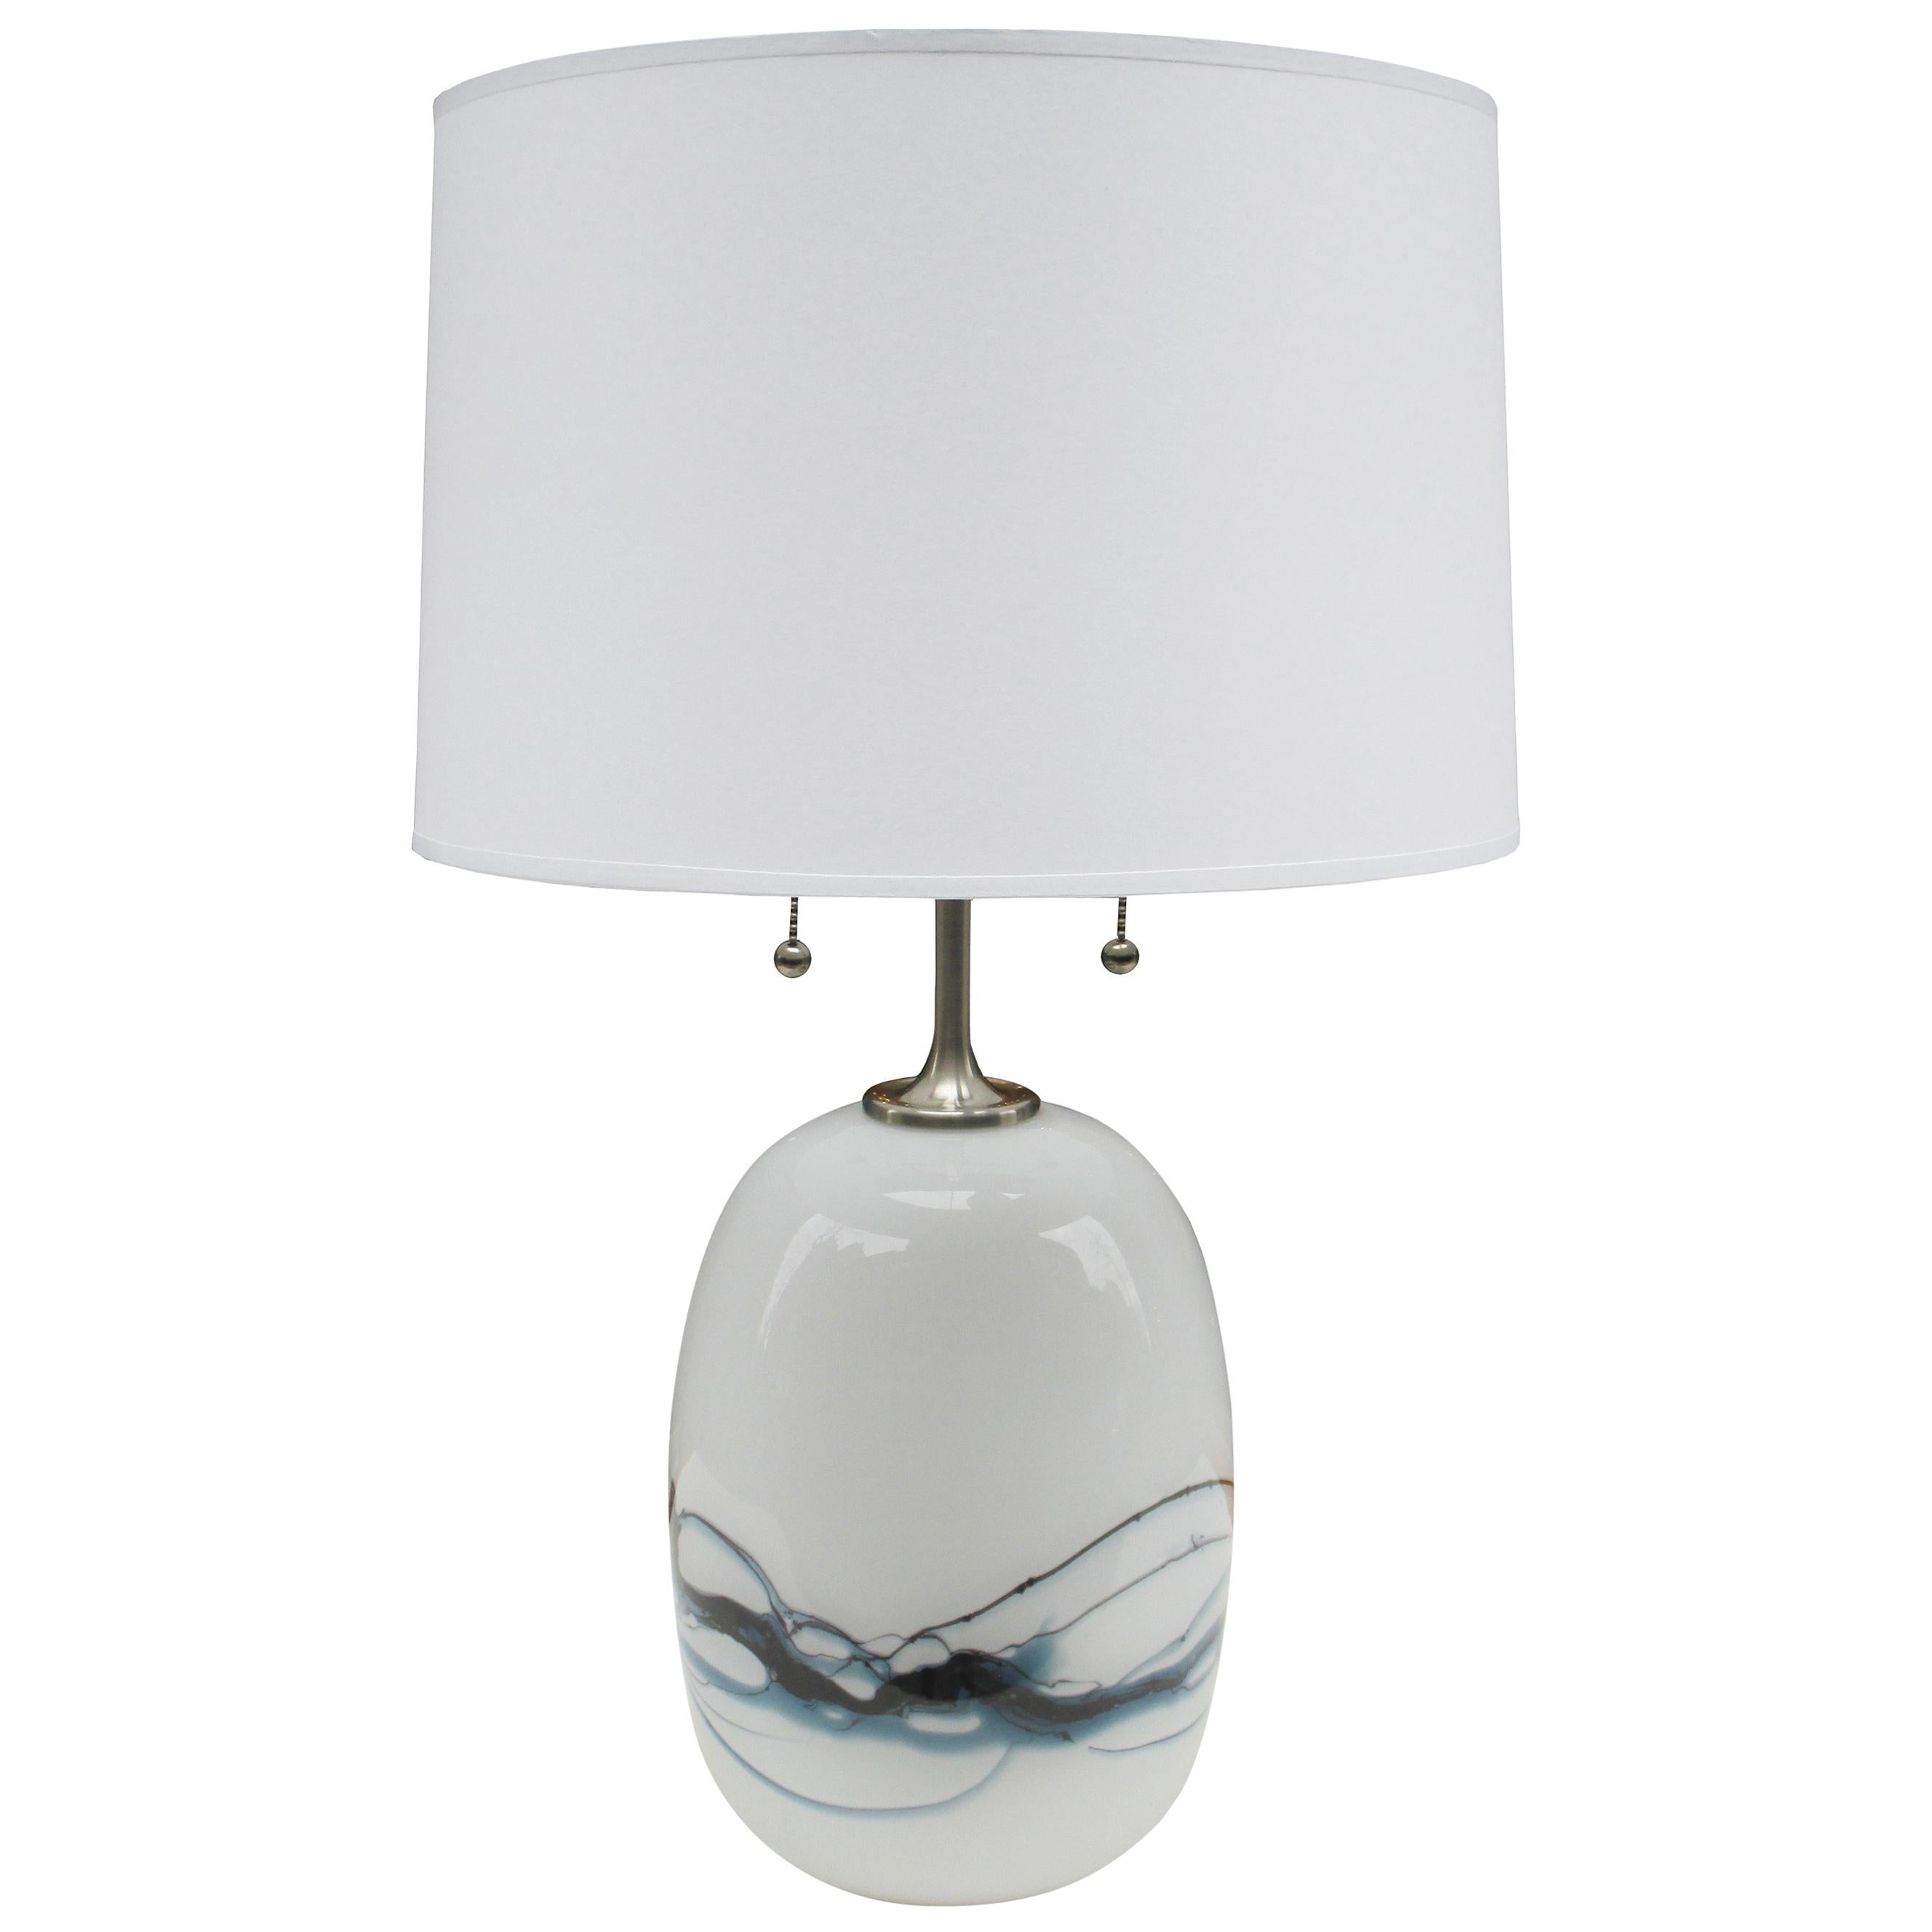 Single Michael Bang Art Glass Table Lamp For Sale